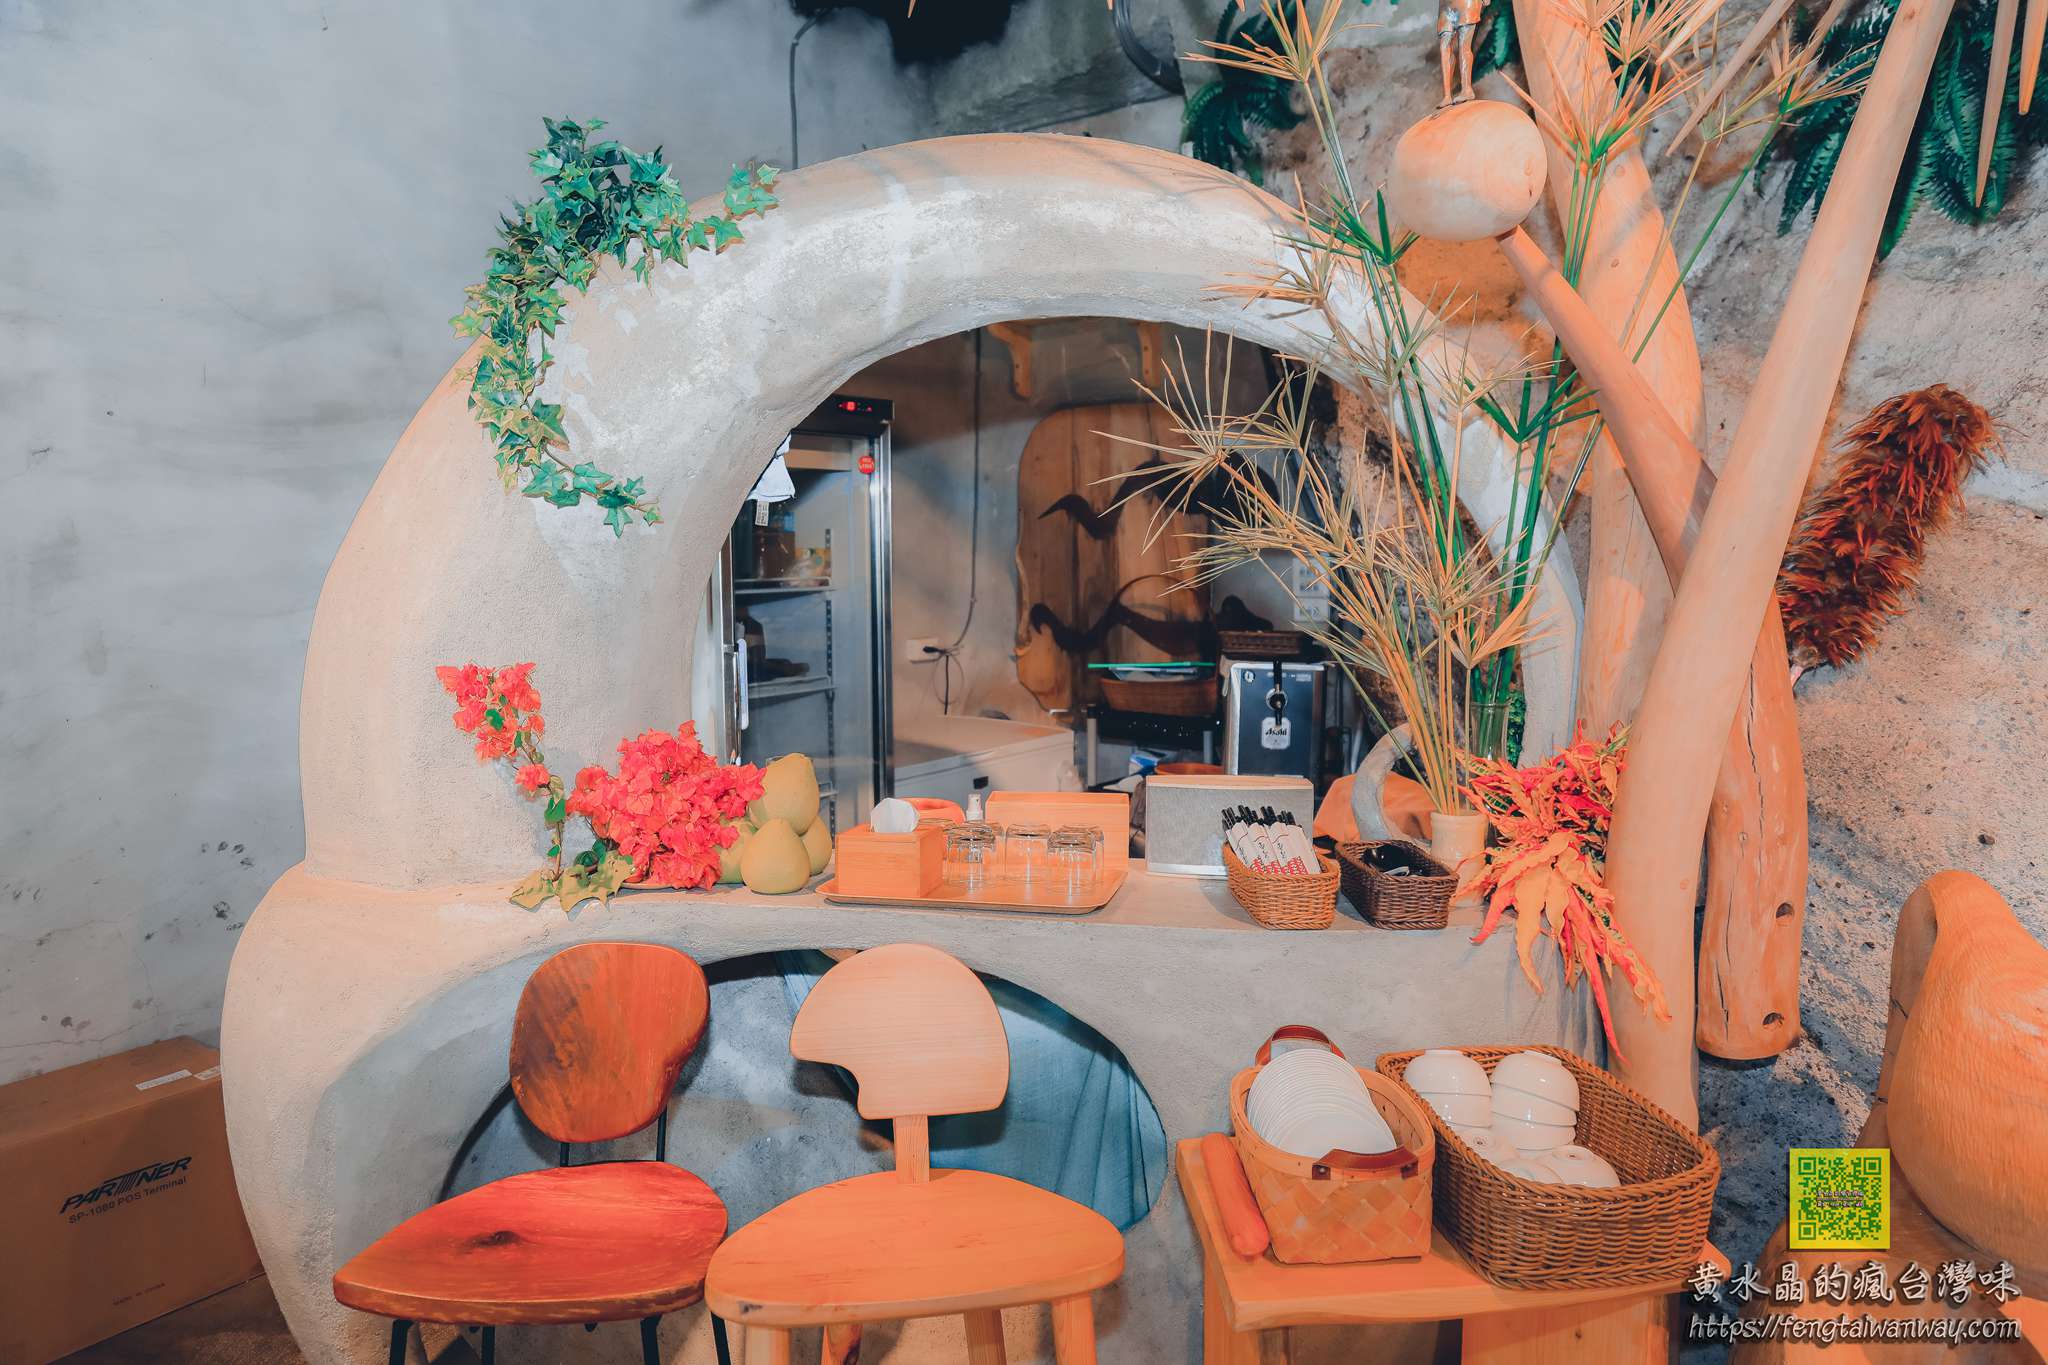 項鍊海岸工作室【花蓮美食景點】|台11線石梯坪海景第一排必拍的阿美族原住民海洋風味餐廳